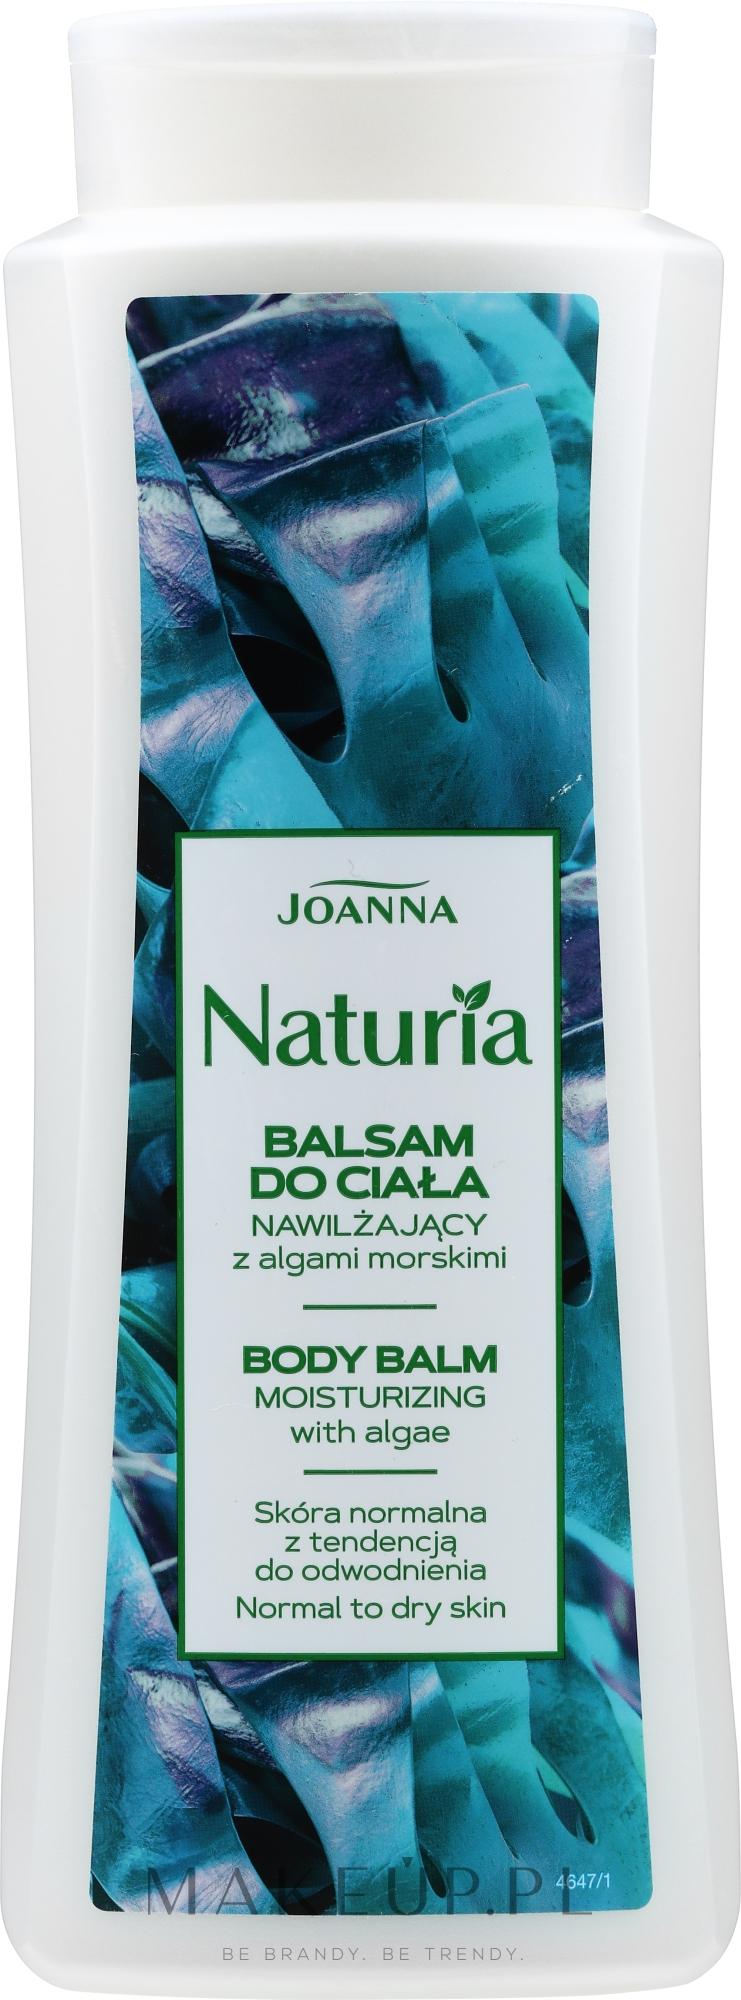 Nawilżający balsam do ciała z algami morskimi - Joanna Naturia — Zdjęcie 500 g